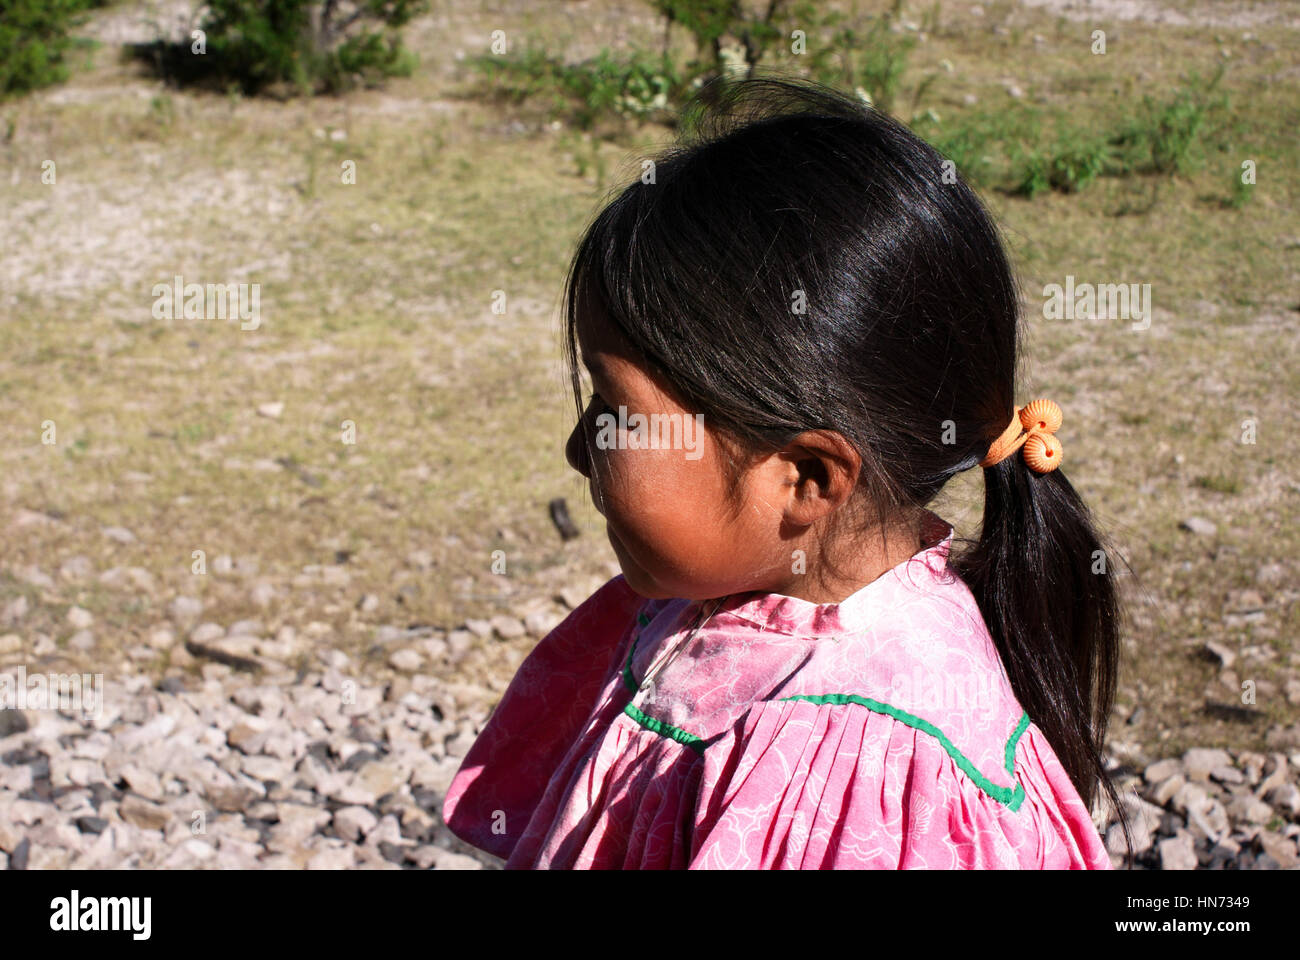 Chihuahua Mexico Tarahumara Indian Girl Fotos E Imagenes De Stock Alamy